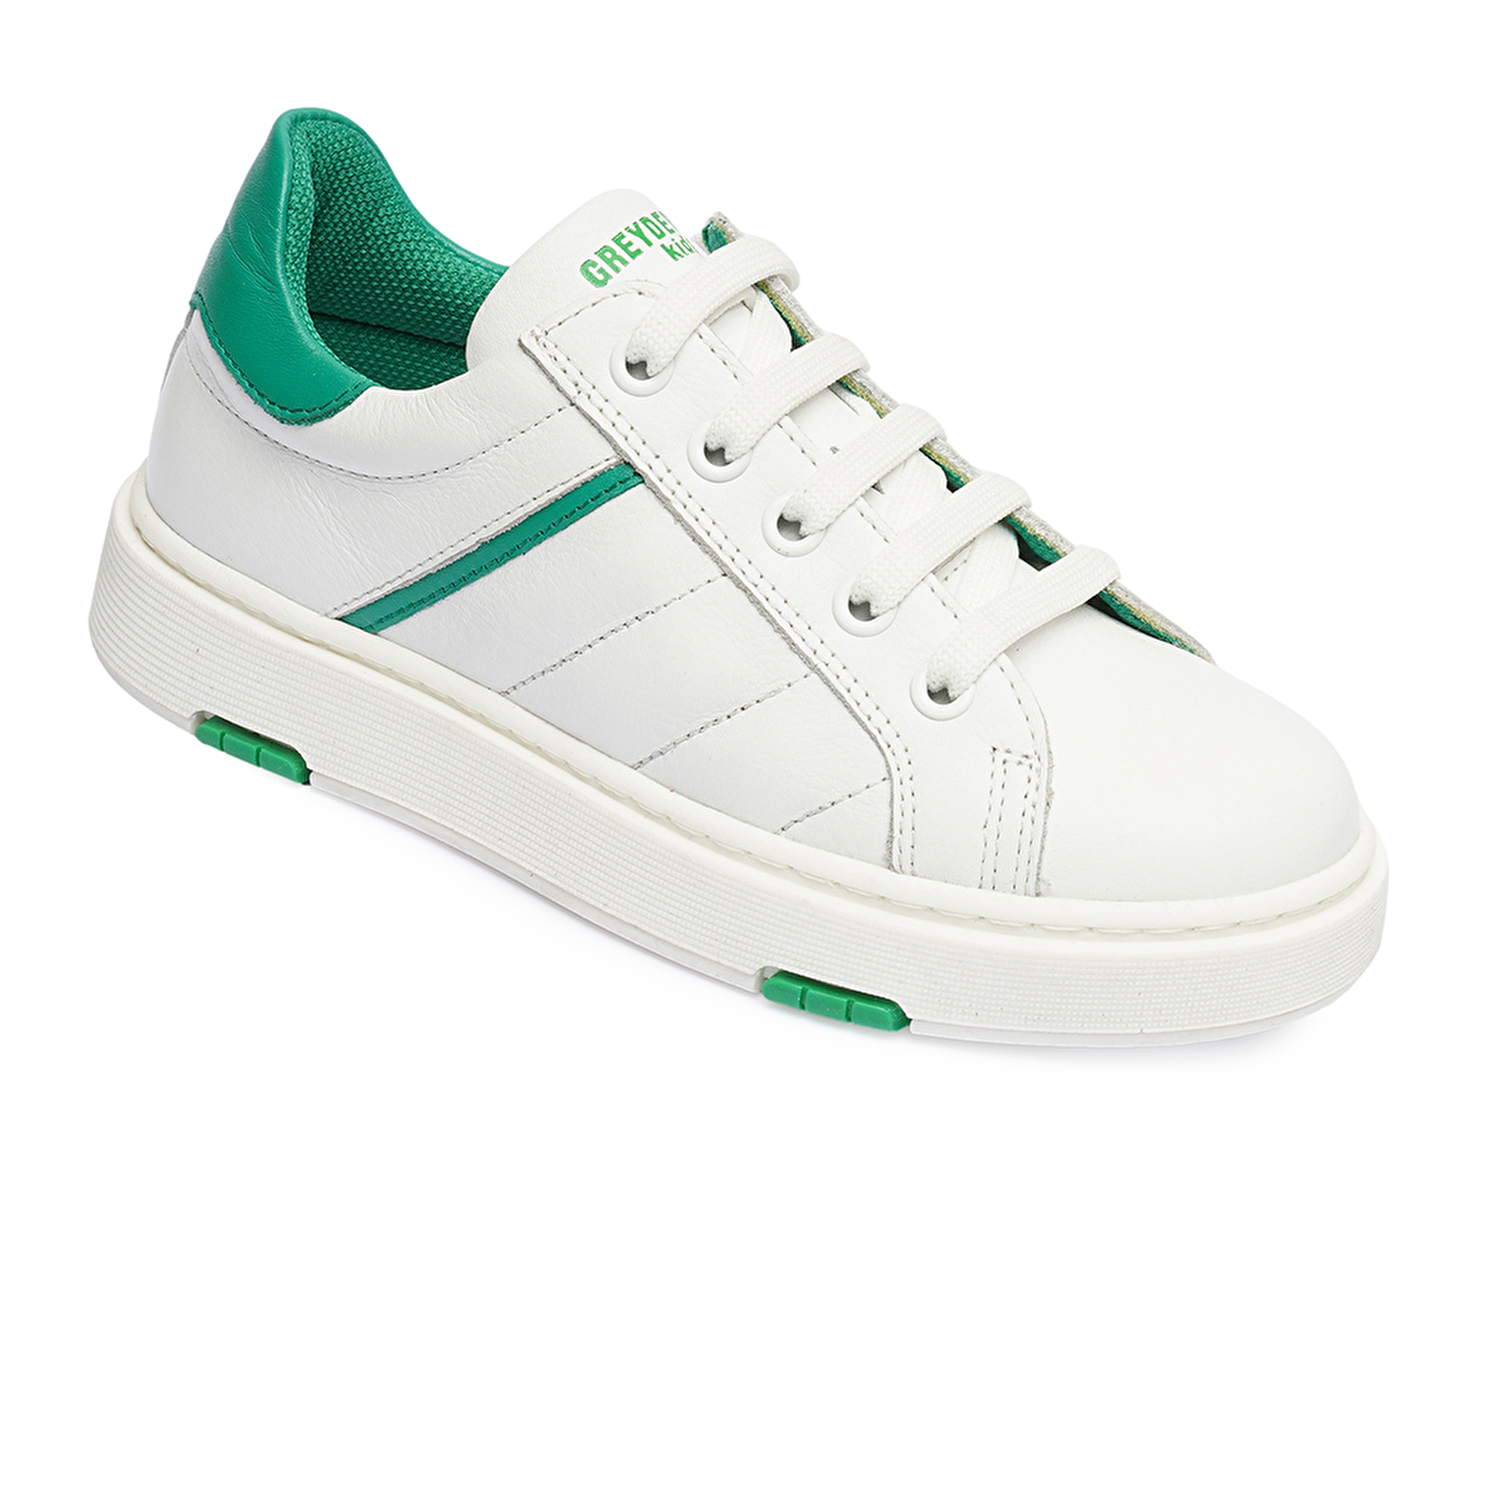 Erkek Çocuk Beyaz Yeşil Hakiki Deri Sneaker Ayakkabı 4Y5NA59501-1